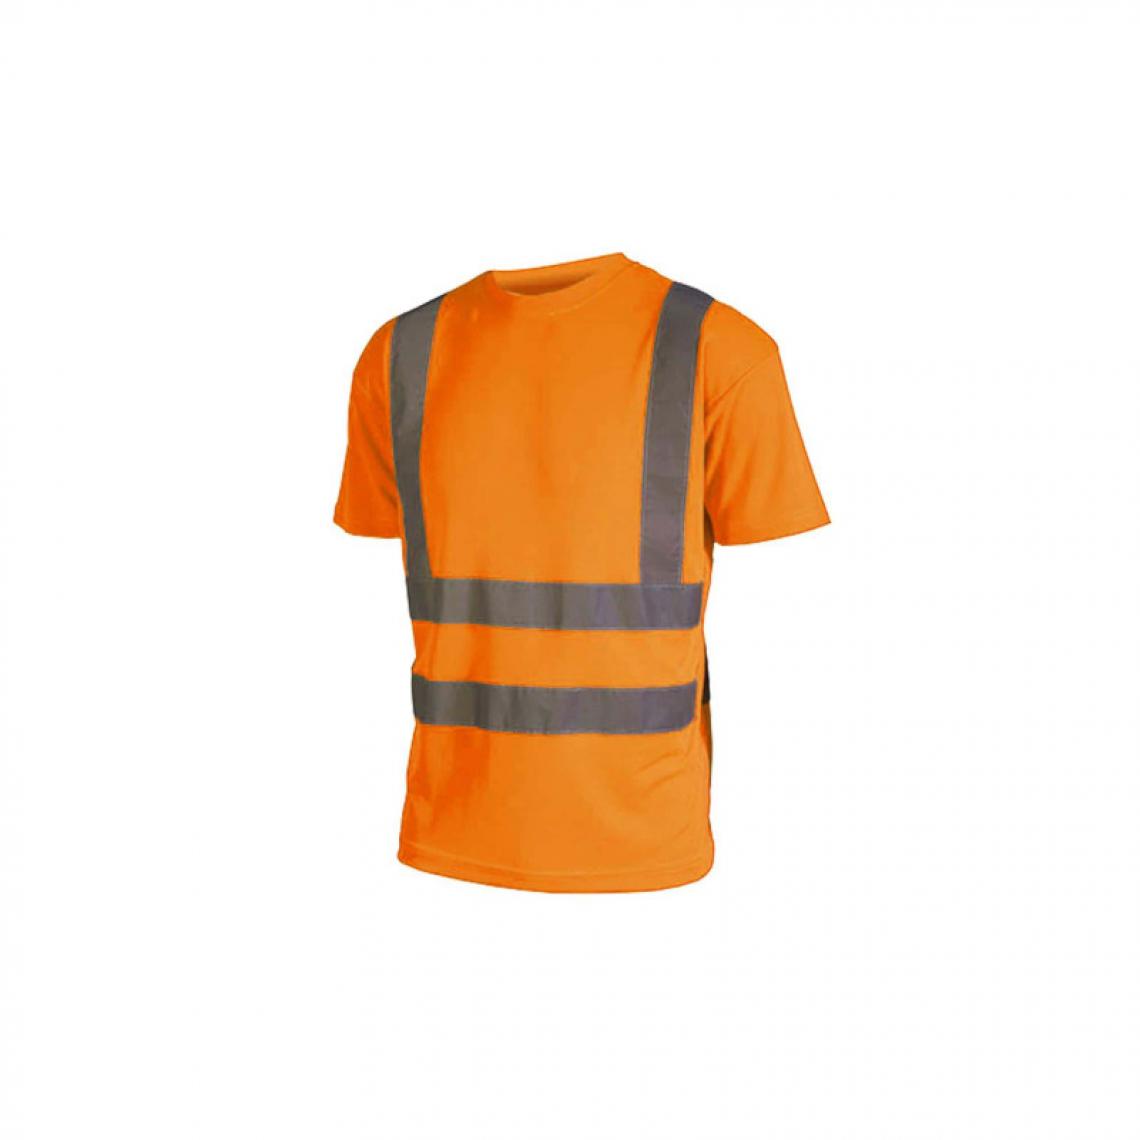 Cepovett - T-shirt haute visibilité - Manches courtes - Orange fluo - 4XL - Protections corps